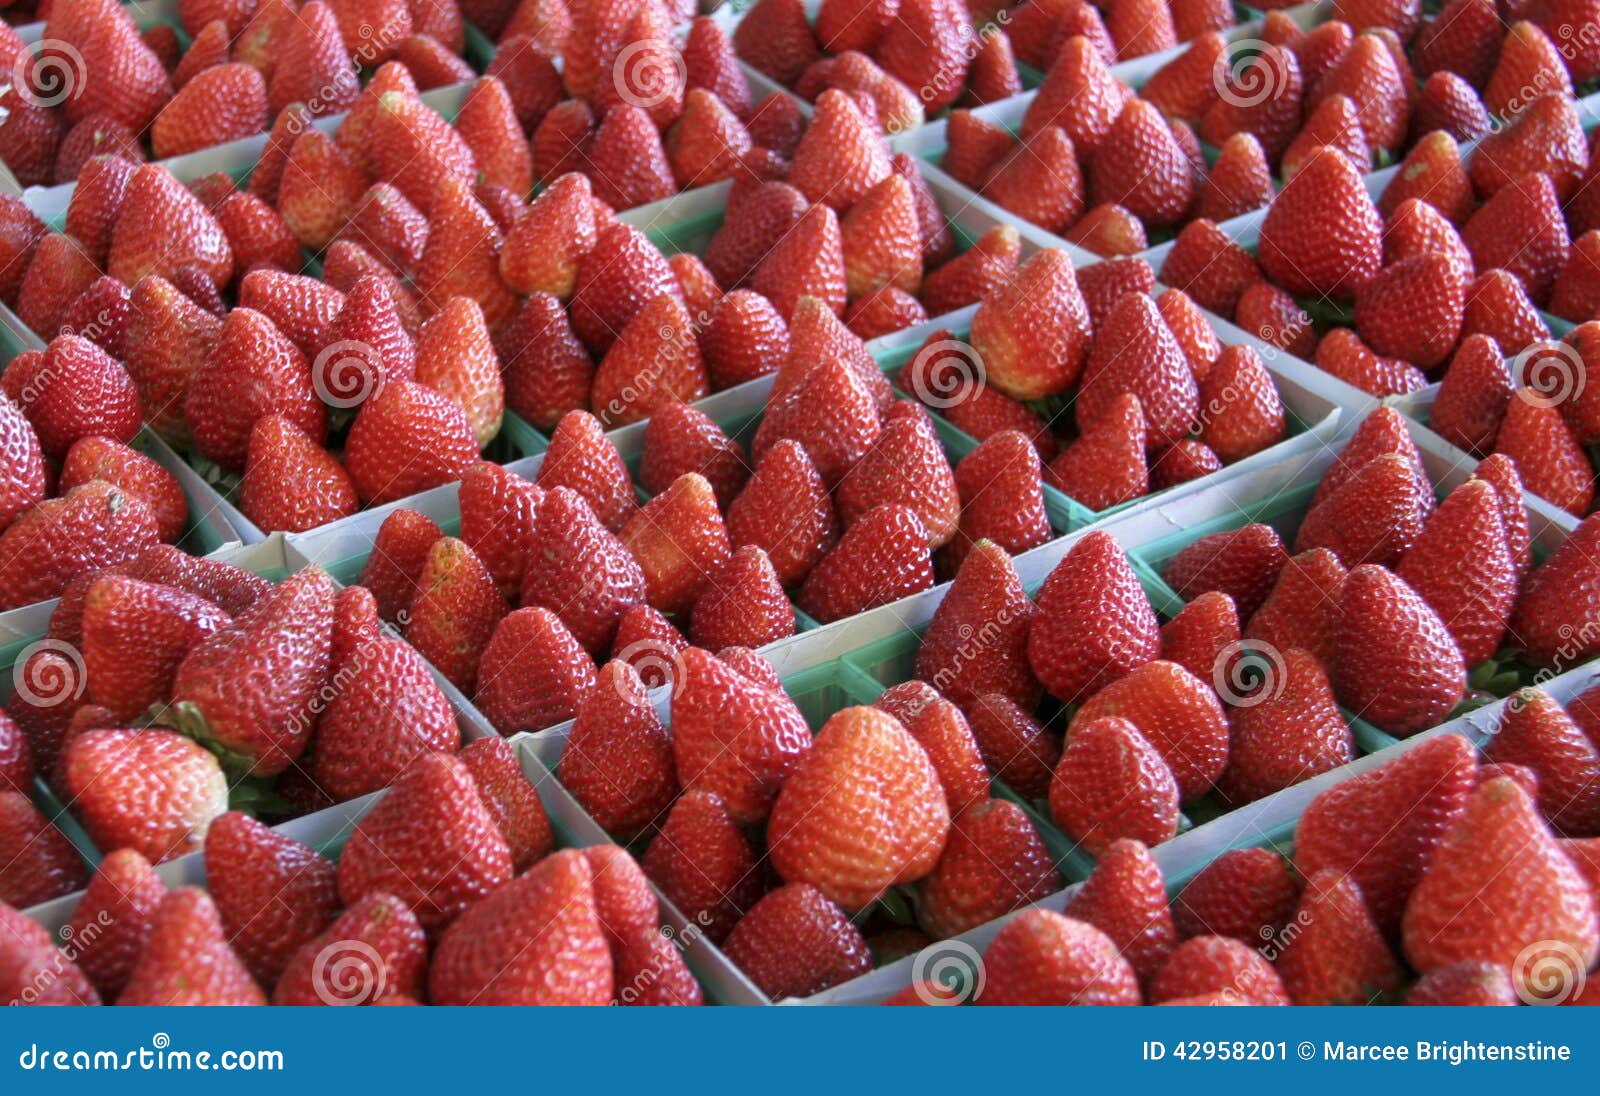 Frische Erdbeeren stockbild. Bild von saftig, frisch - 42958201